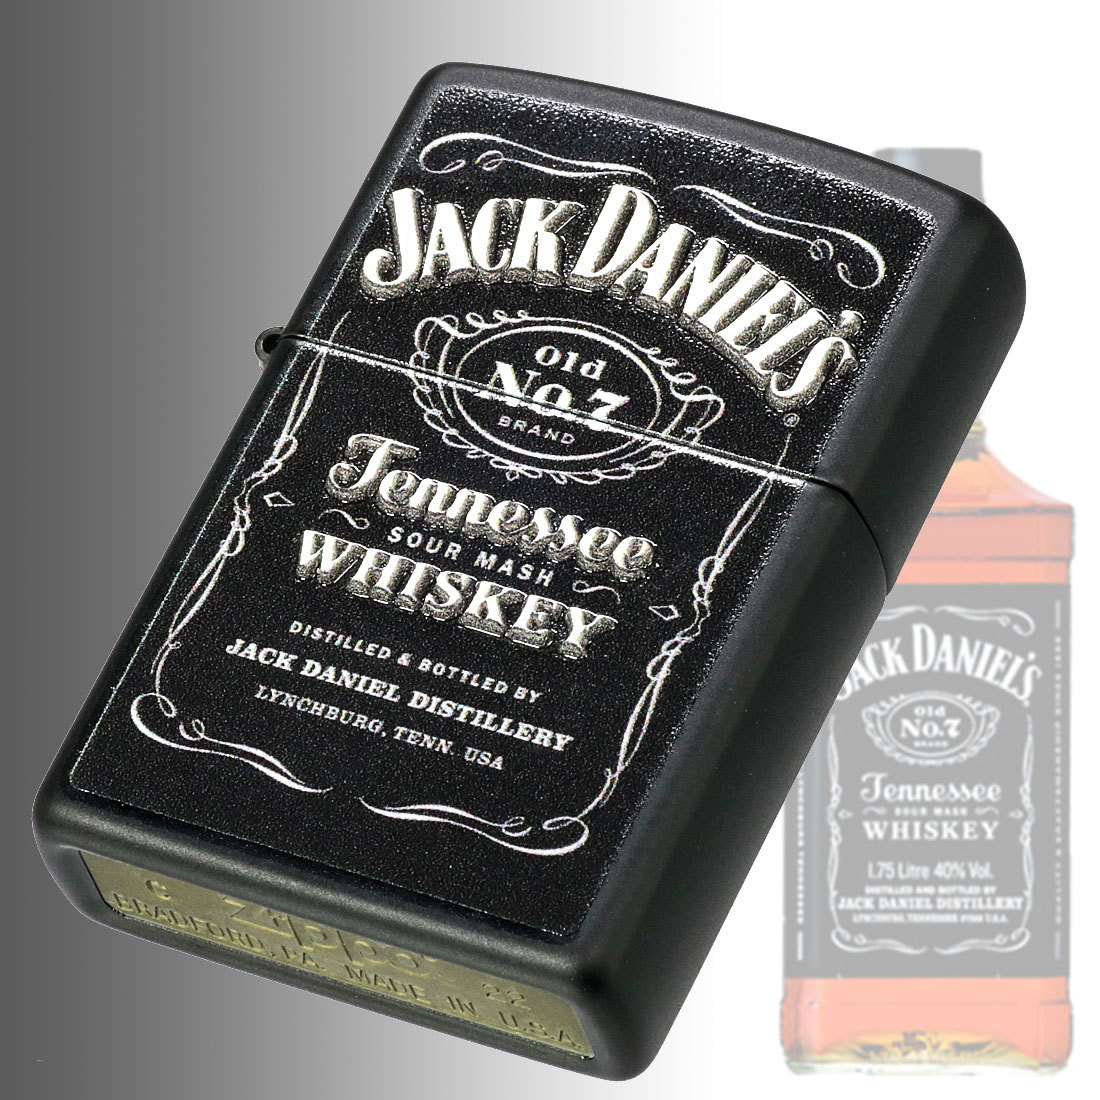 zippo(ジッポーライター)ジャックダニエル Jack Daniel's Old No. 7 49281 正規輸入品【ネコポス可】_【ZIPPO】49281 Jack Daniels Old No. 7画